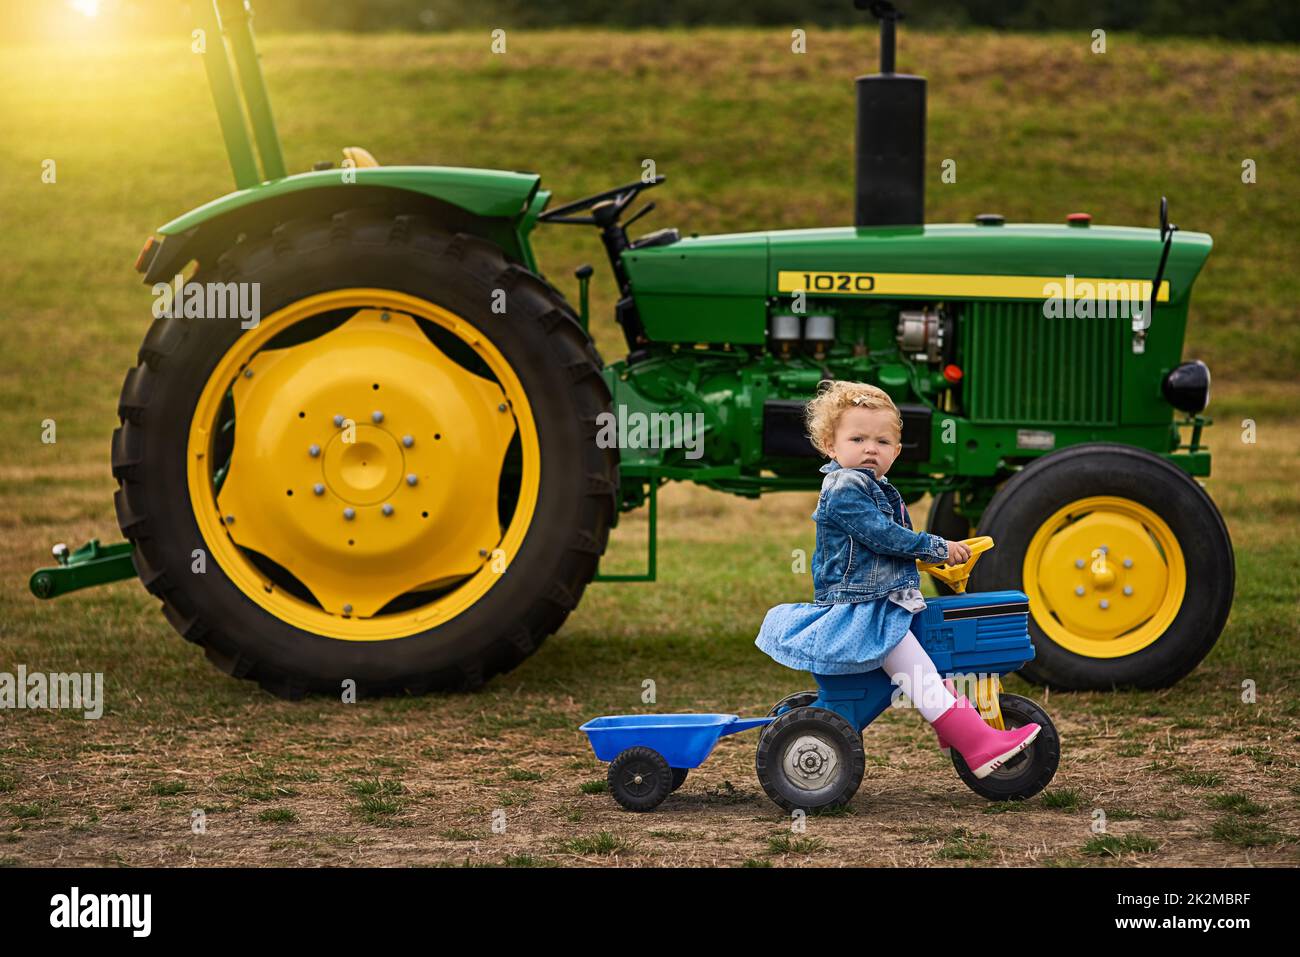 Ich fuhr Traktoren, bevor Sie Ihre Trainingsräder abhoben. Porträt eines entzückenden kleinen Mädchens, das auf einem Spielzeugauto auf einer Farm reitet. Stockfoto